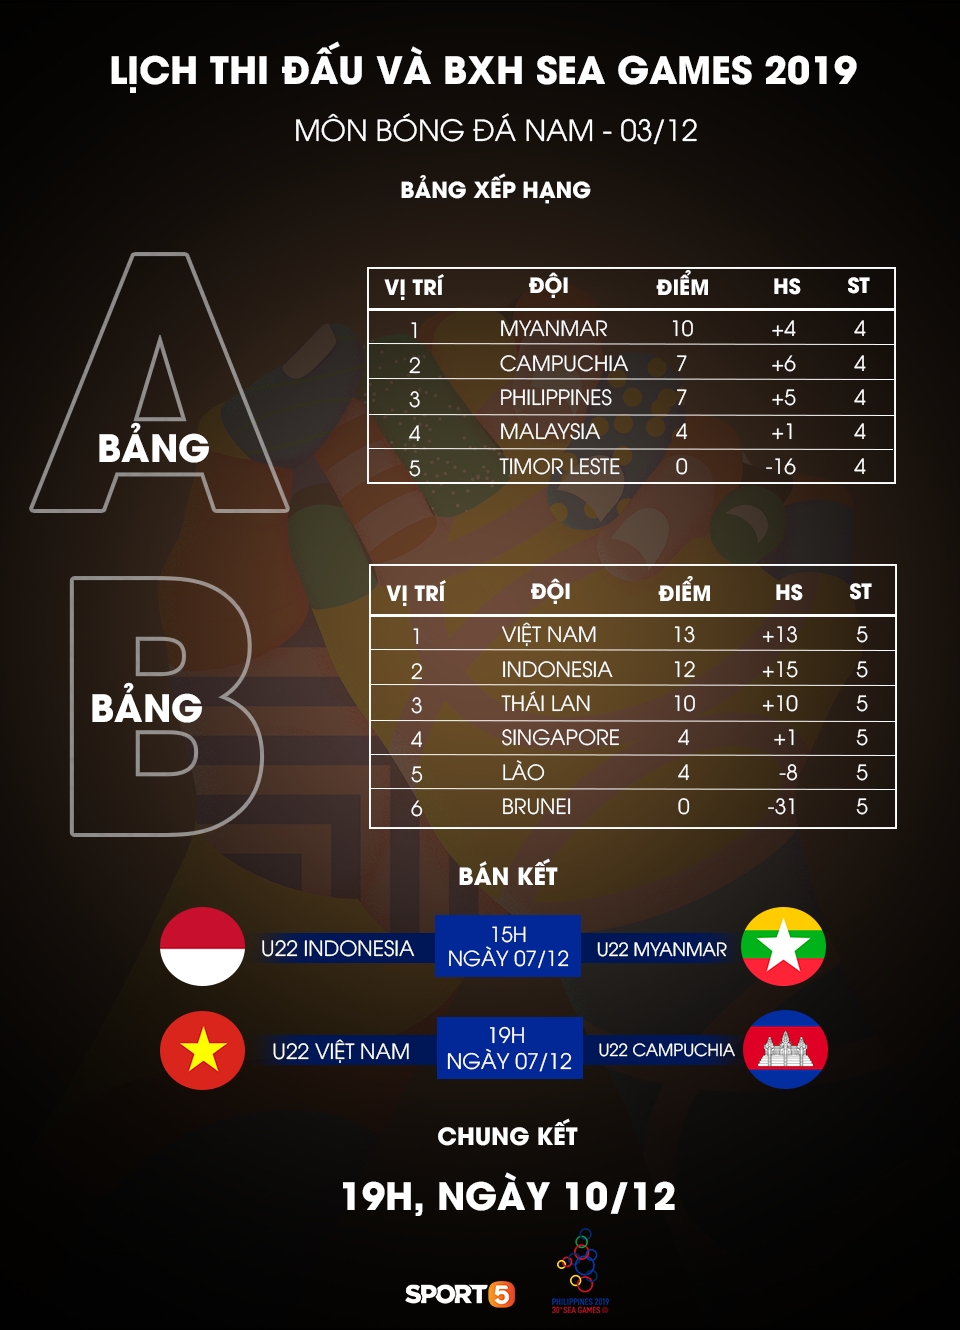 Tỷ số hòa 2-2 giúp Việt Nam giành thêm nhiều lợi thế trước trận bán kết SEA Games 2019 - Ảnh 4.